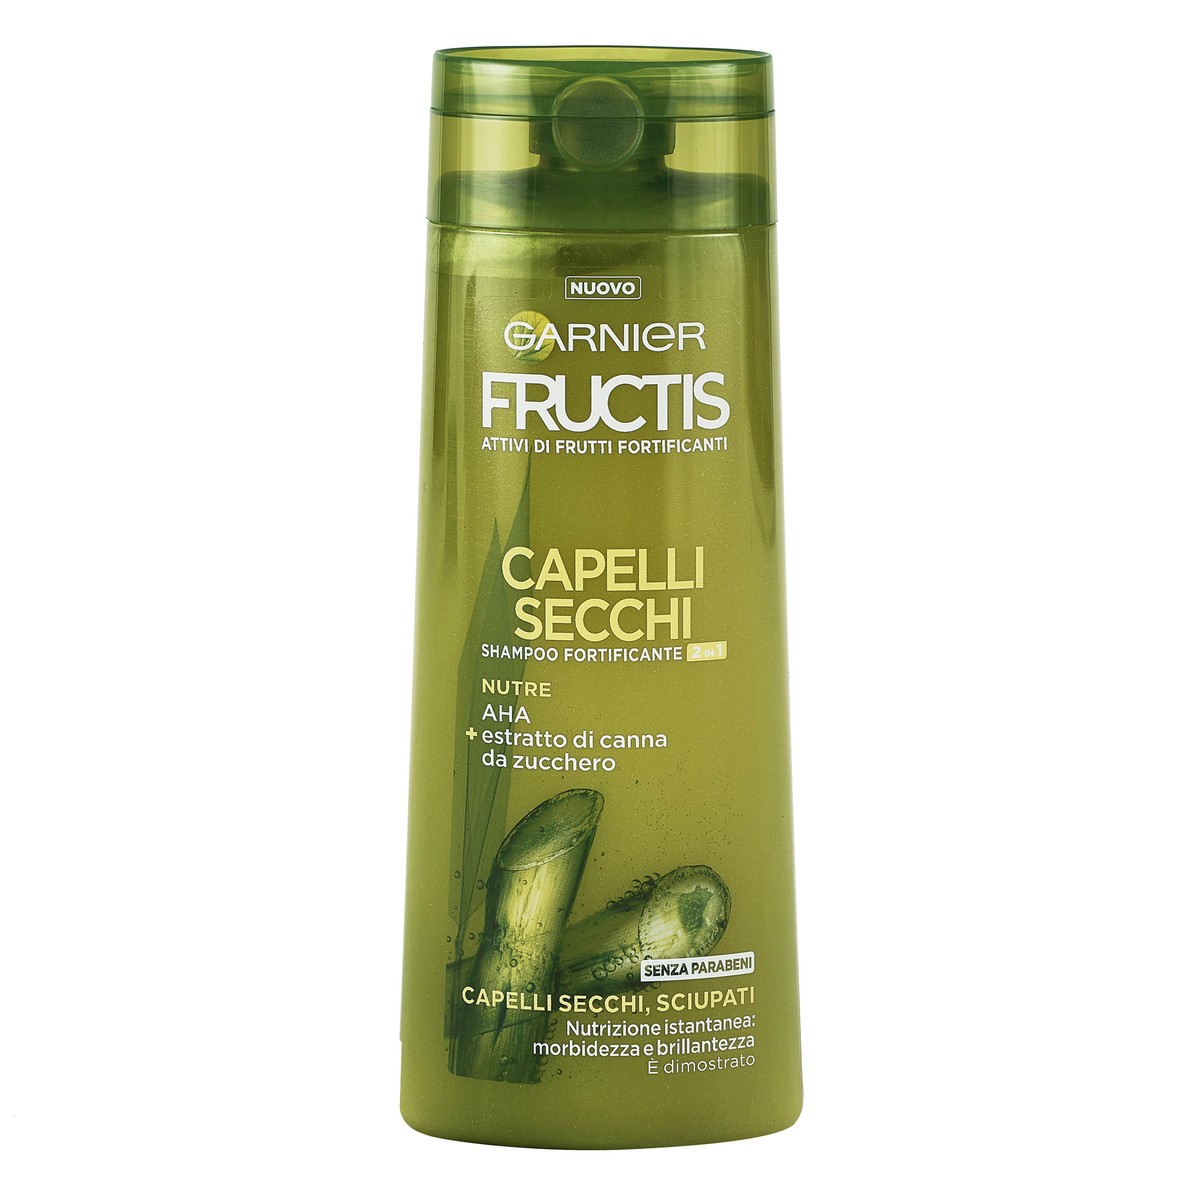 Garnier Fructis Shampoo fortificante 2in1 Capelli Secchi